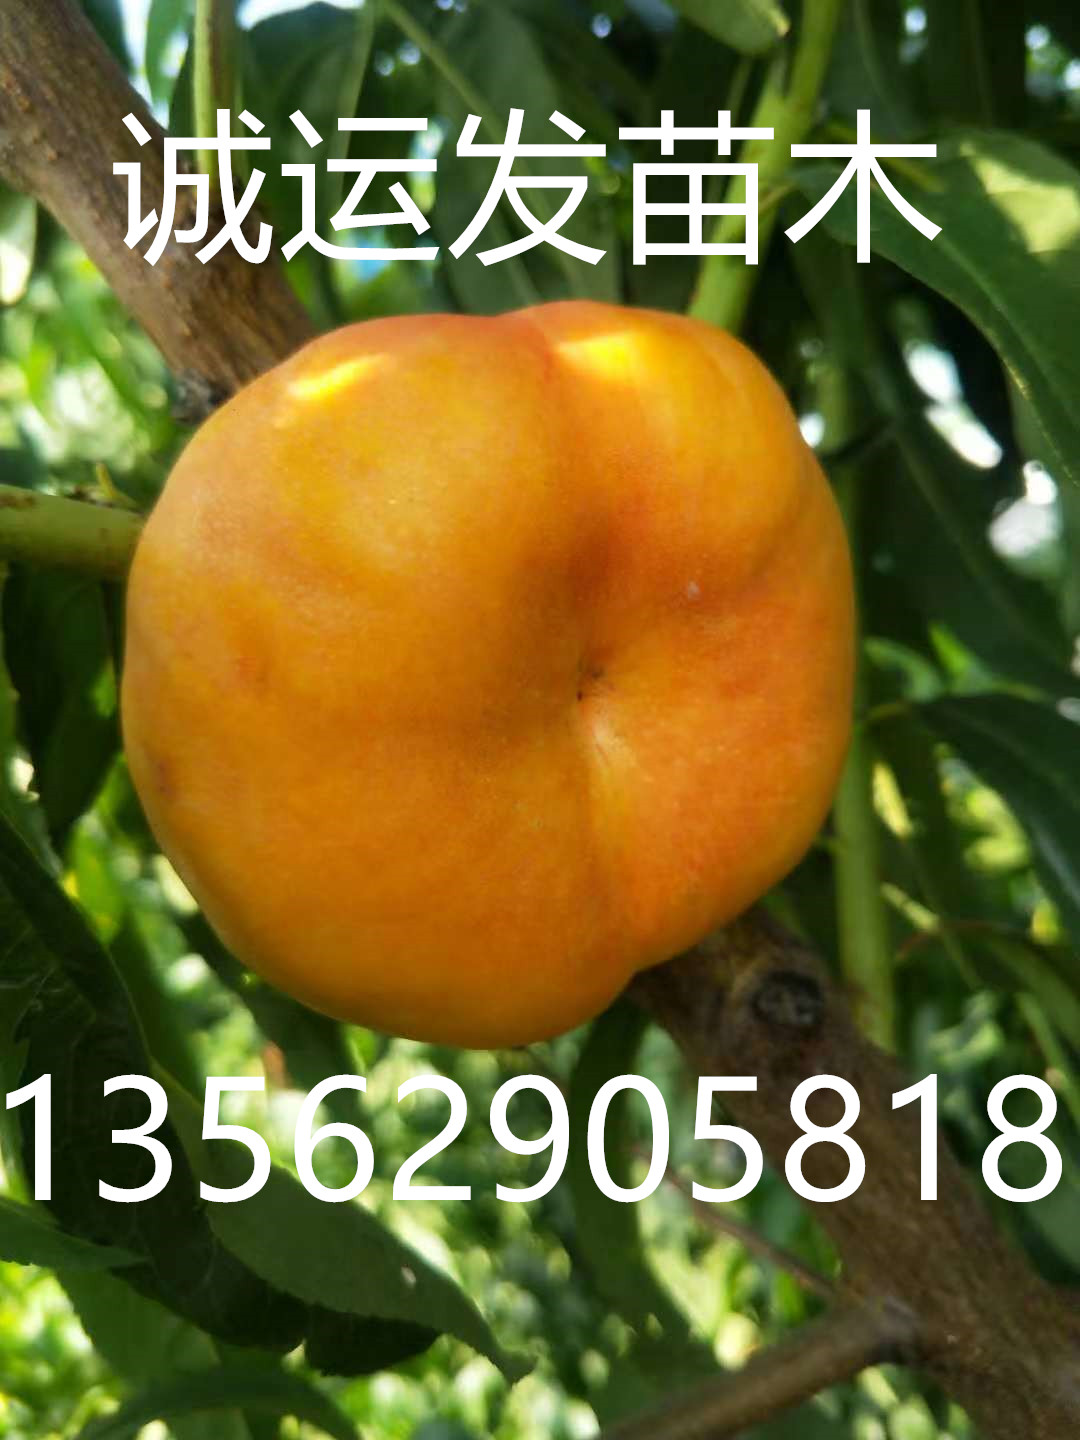 十月成熟的黄桃品种贵的桃子是什么品种